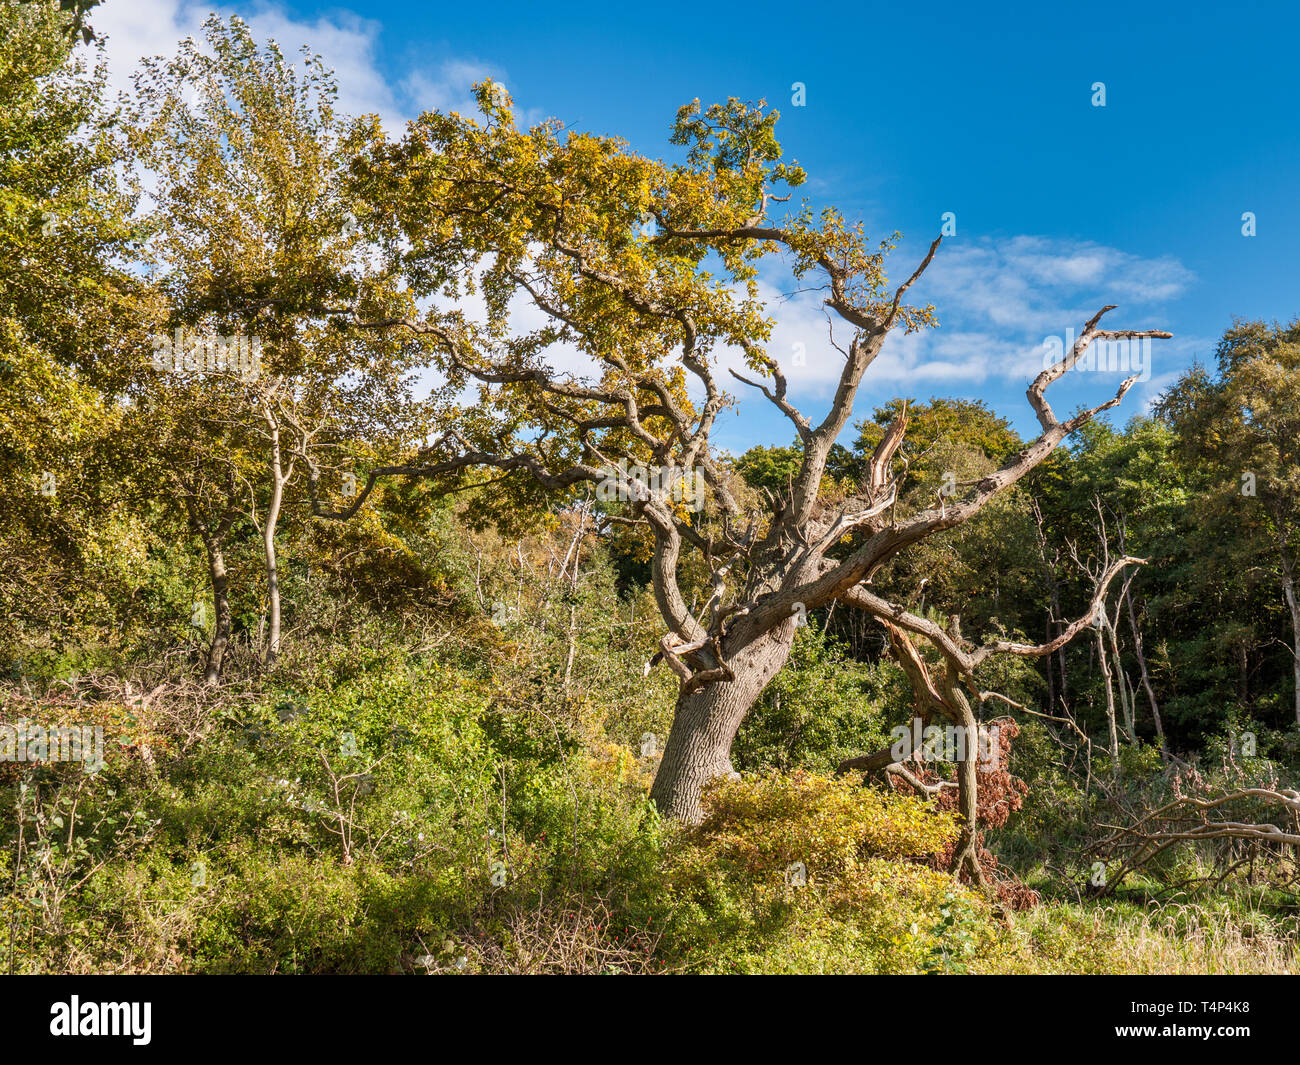 Vieil arbre dans la forêt près de la mer Baltique sur l'île de Langeland, Danemark Banque D'Images